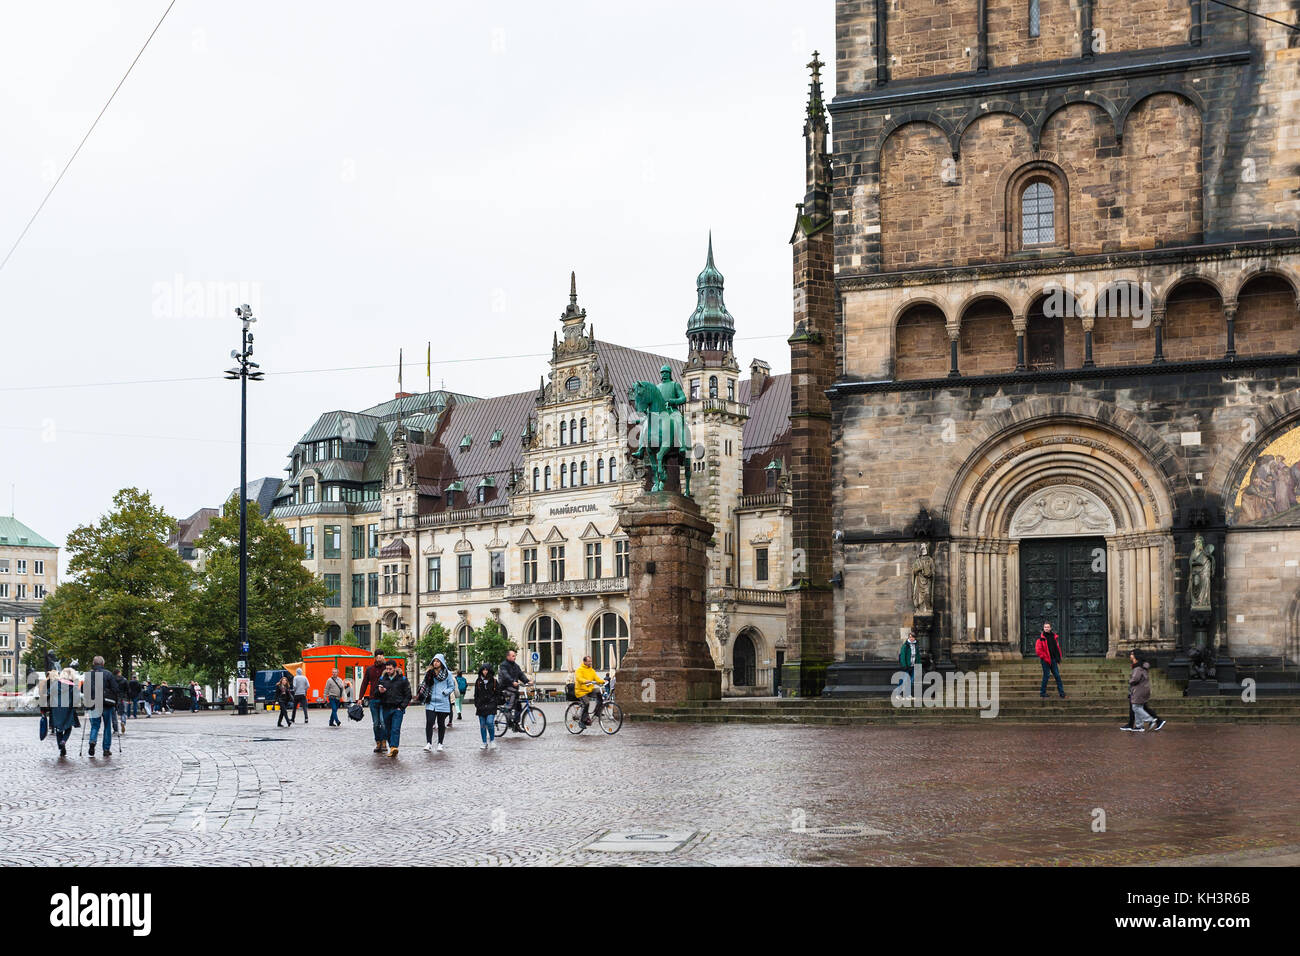 BRÊME, ALLEMAGNE - 16 SEPTEMBRE 2017 : personnes près du monument de Bismarck et de la cathédrale sur Bremer Marktplatz (place du marché de Brême) sous la pluie. Le carré est s Banque D'Images